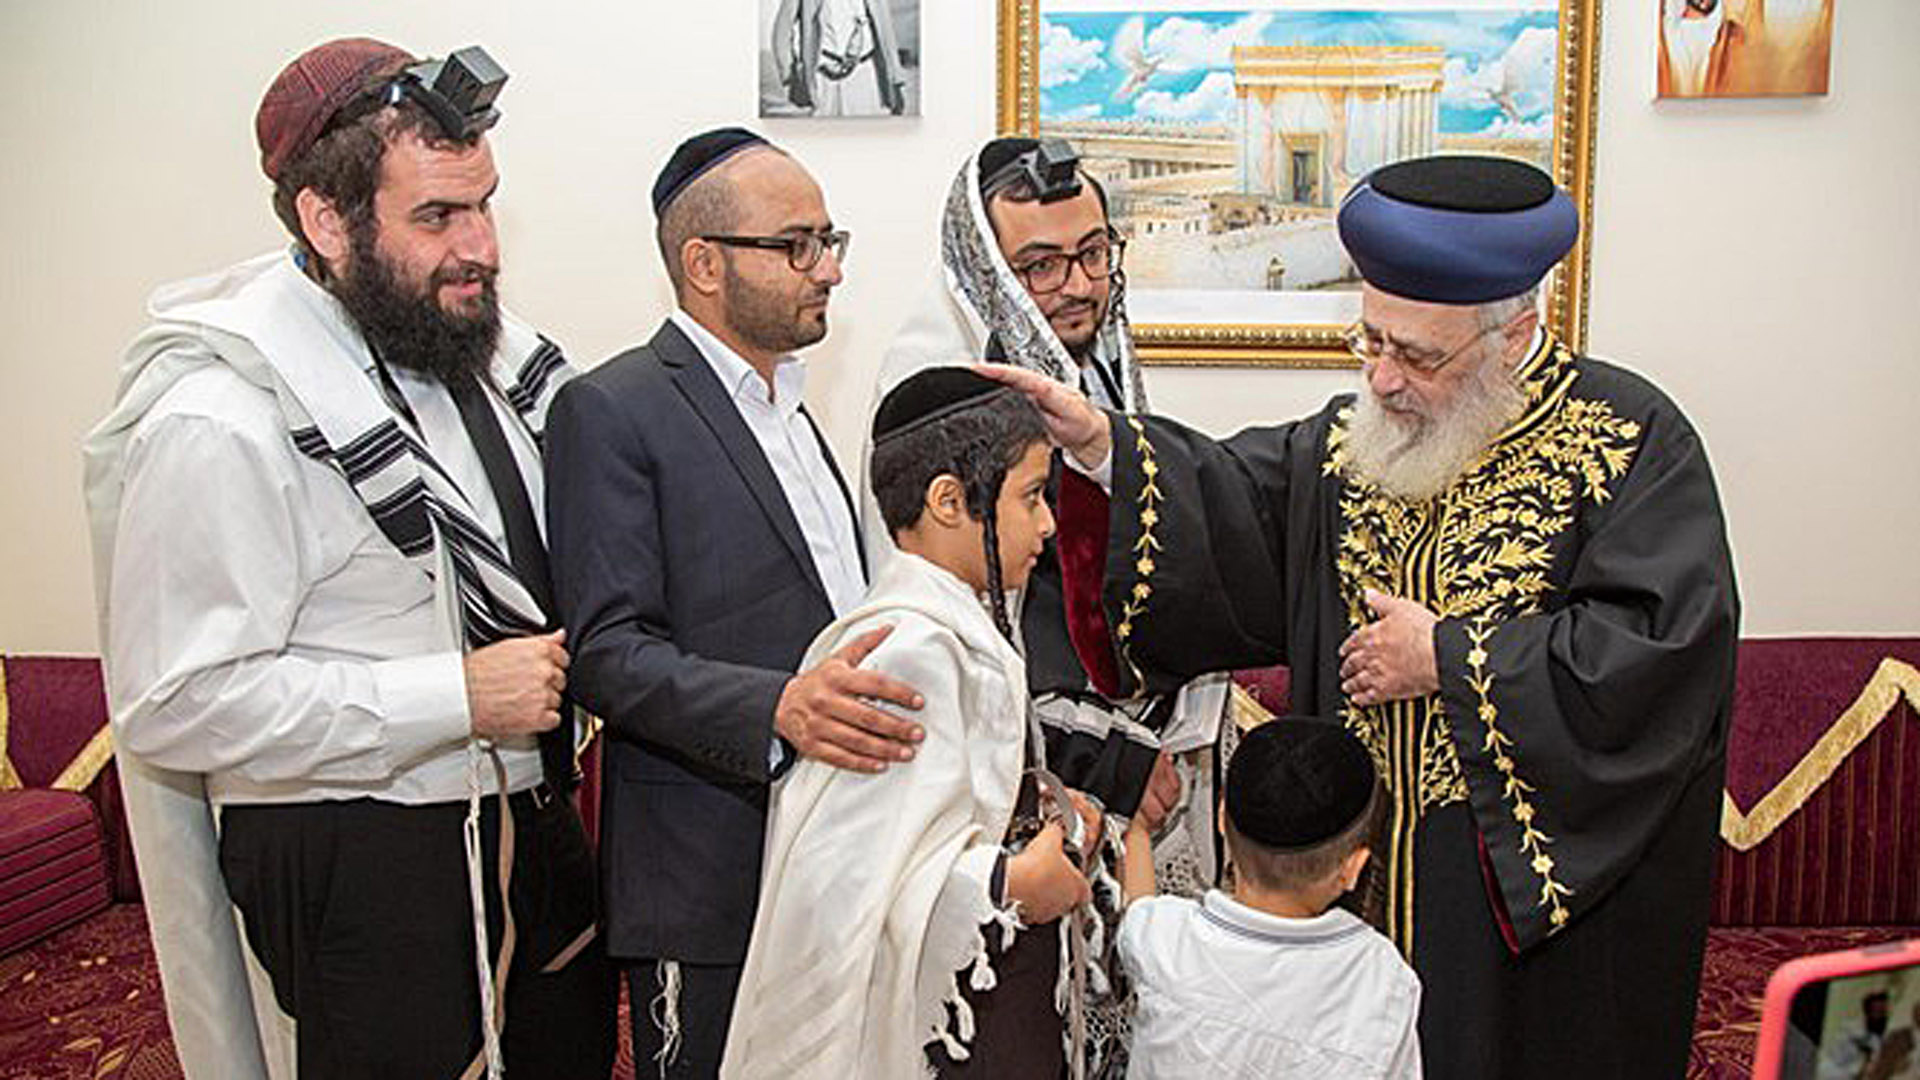 Bei seinem Besuch traf Rabbi Josef auch Mitglieder der jüdischen Gemeinschaft in dem Golfstaat